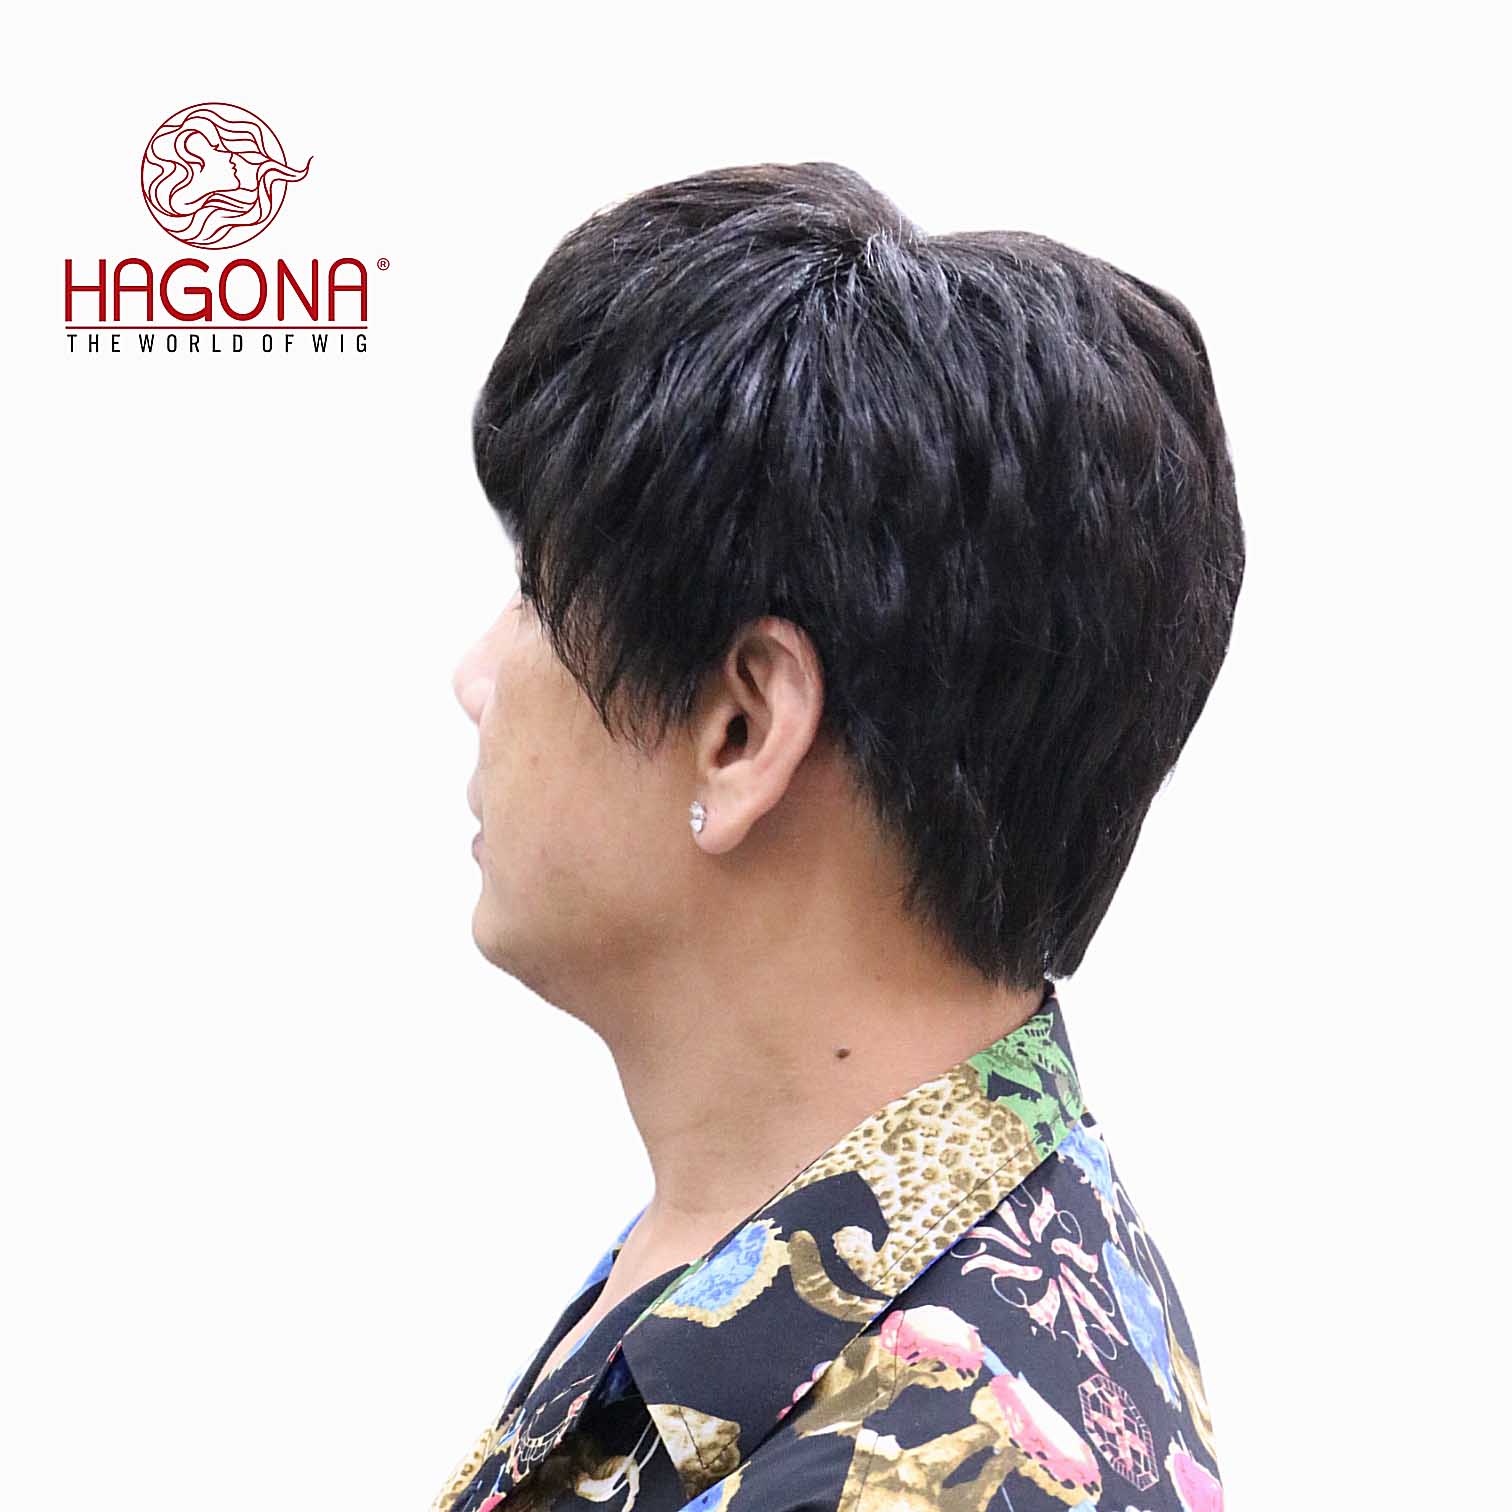 Những mẫu tóc giả dành cho nam giới đẹp nhất tại Tóc giả Sài Gòn